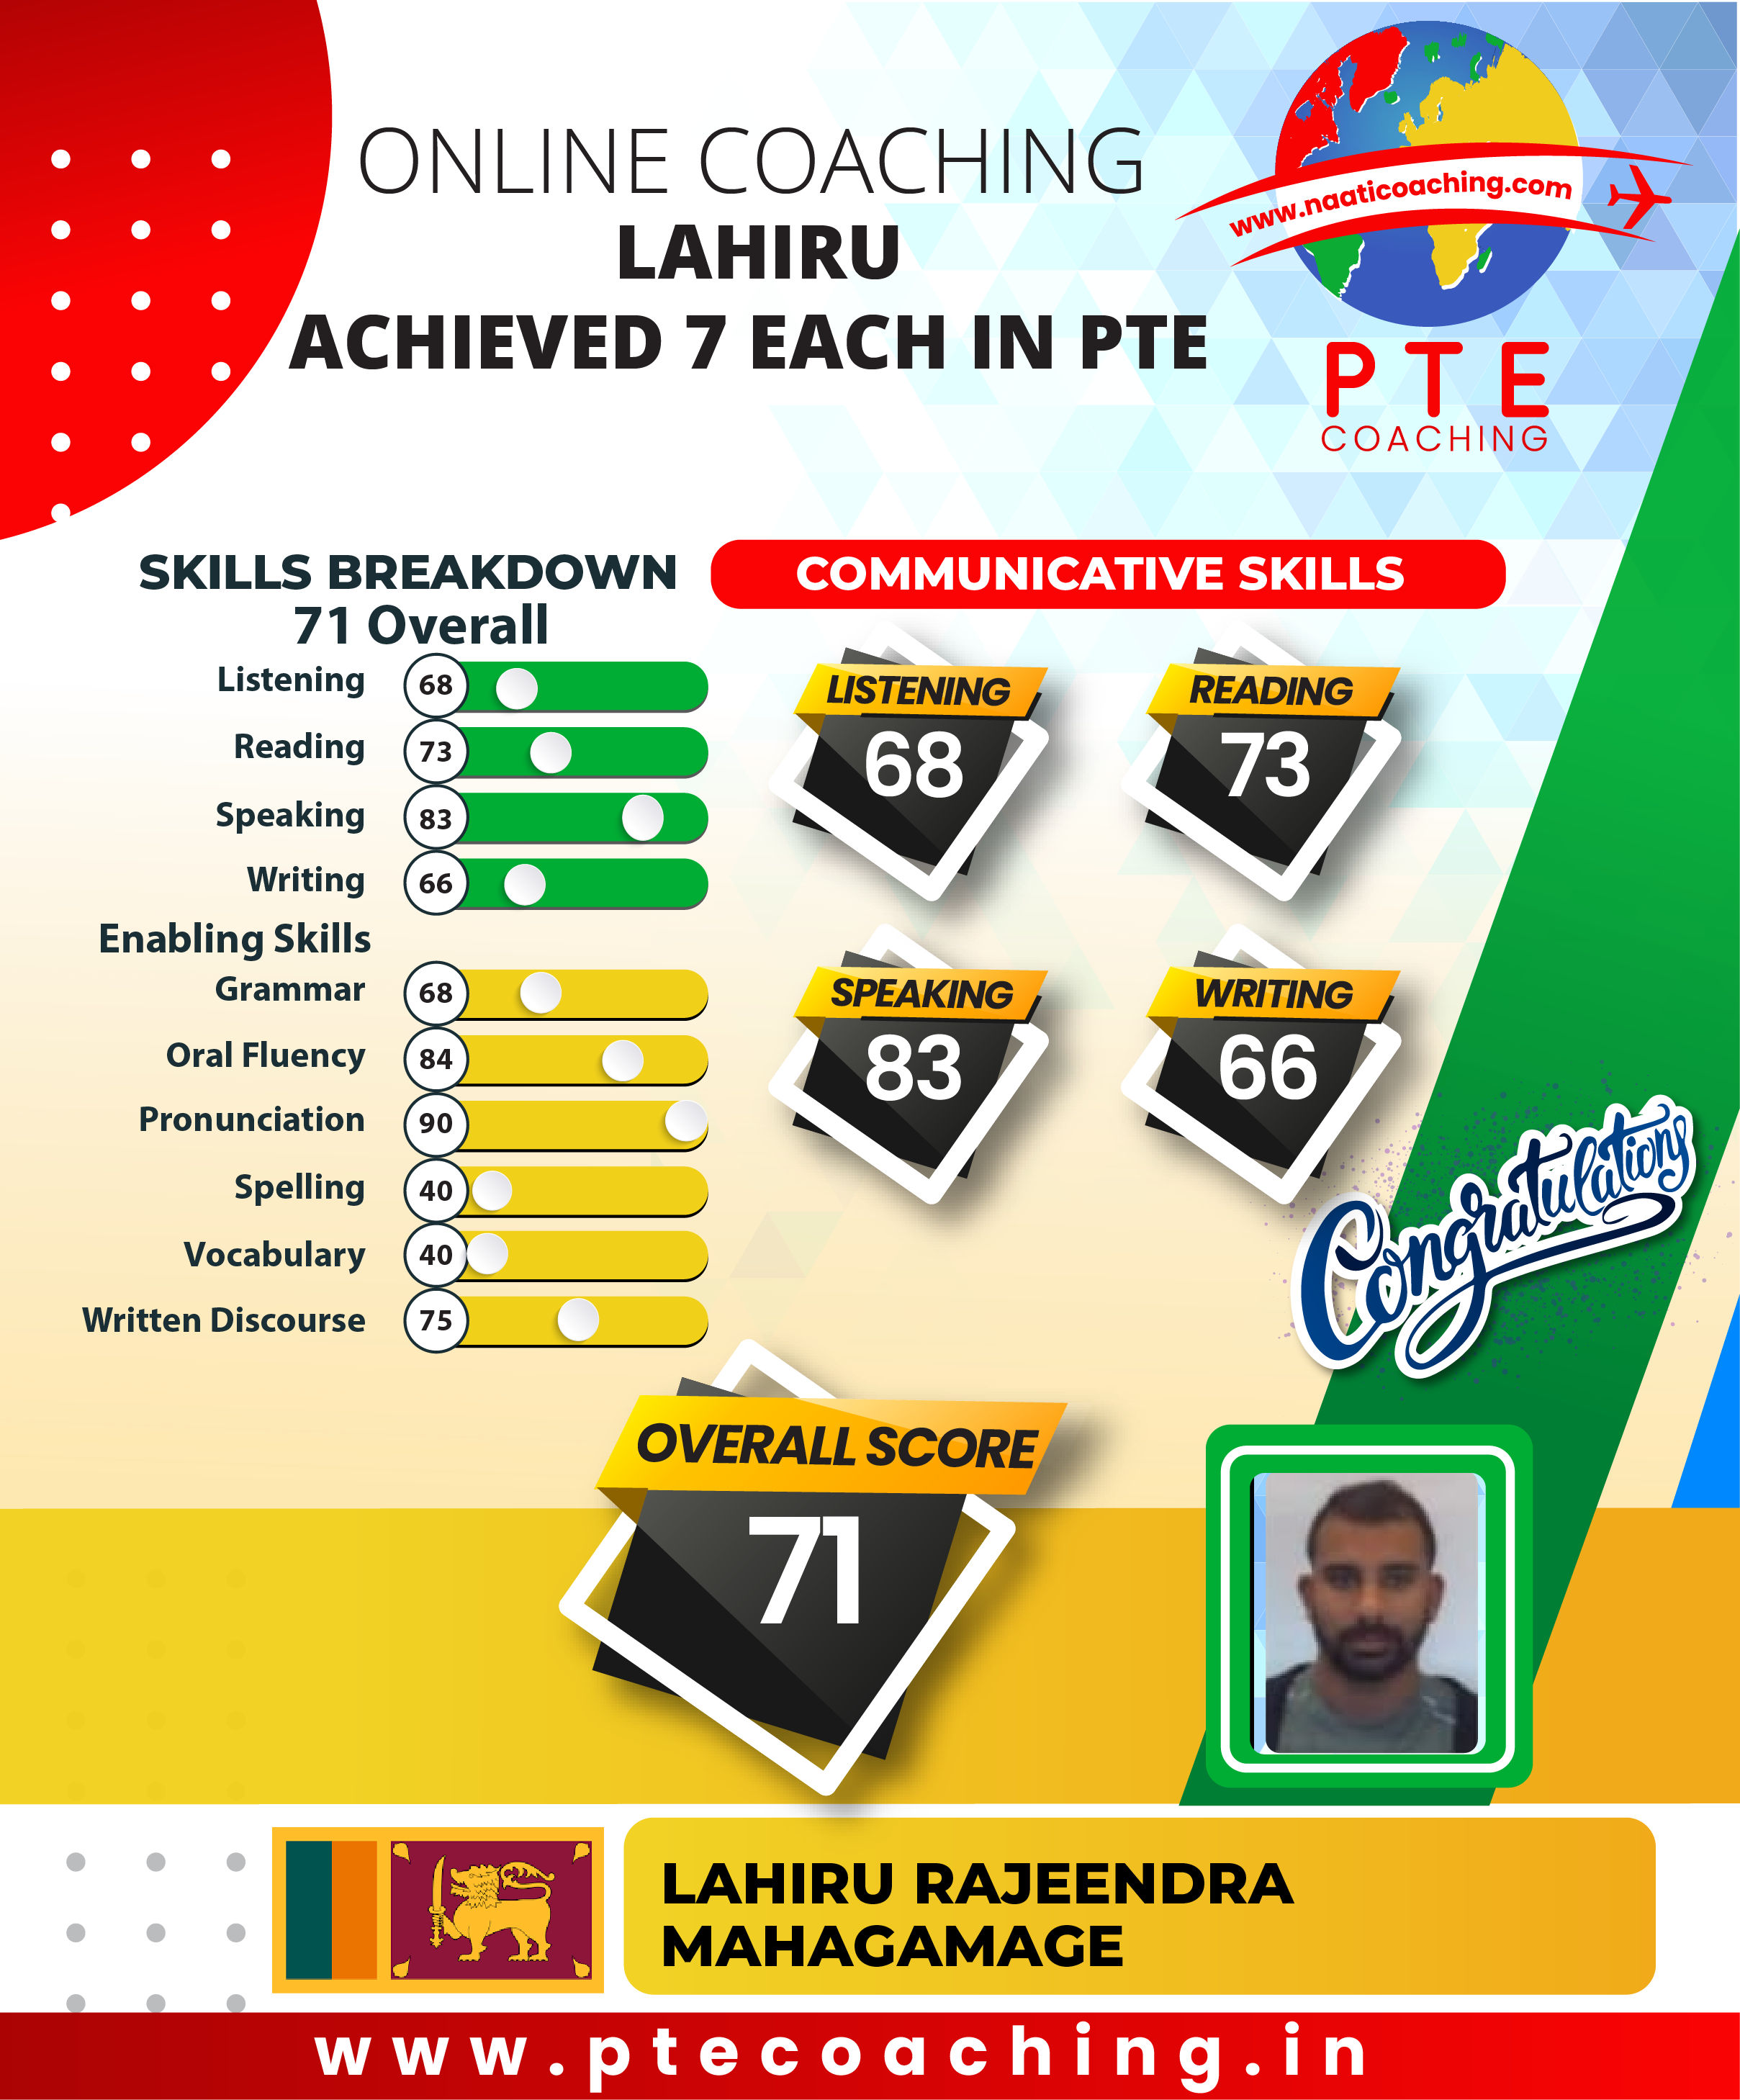 PTE Coaching Scorecard - Lahiru achieved 7 each in PTE